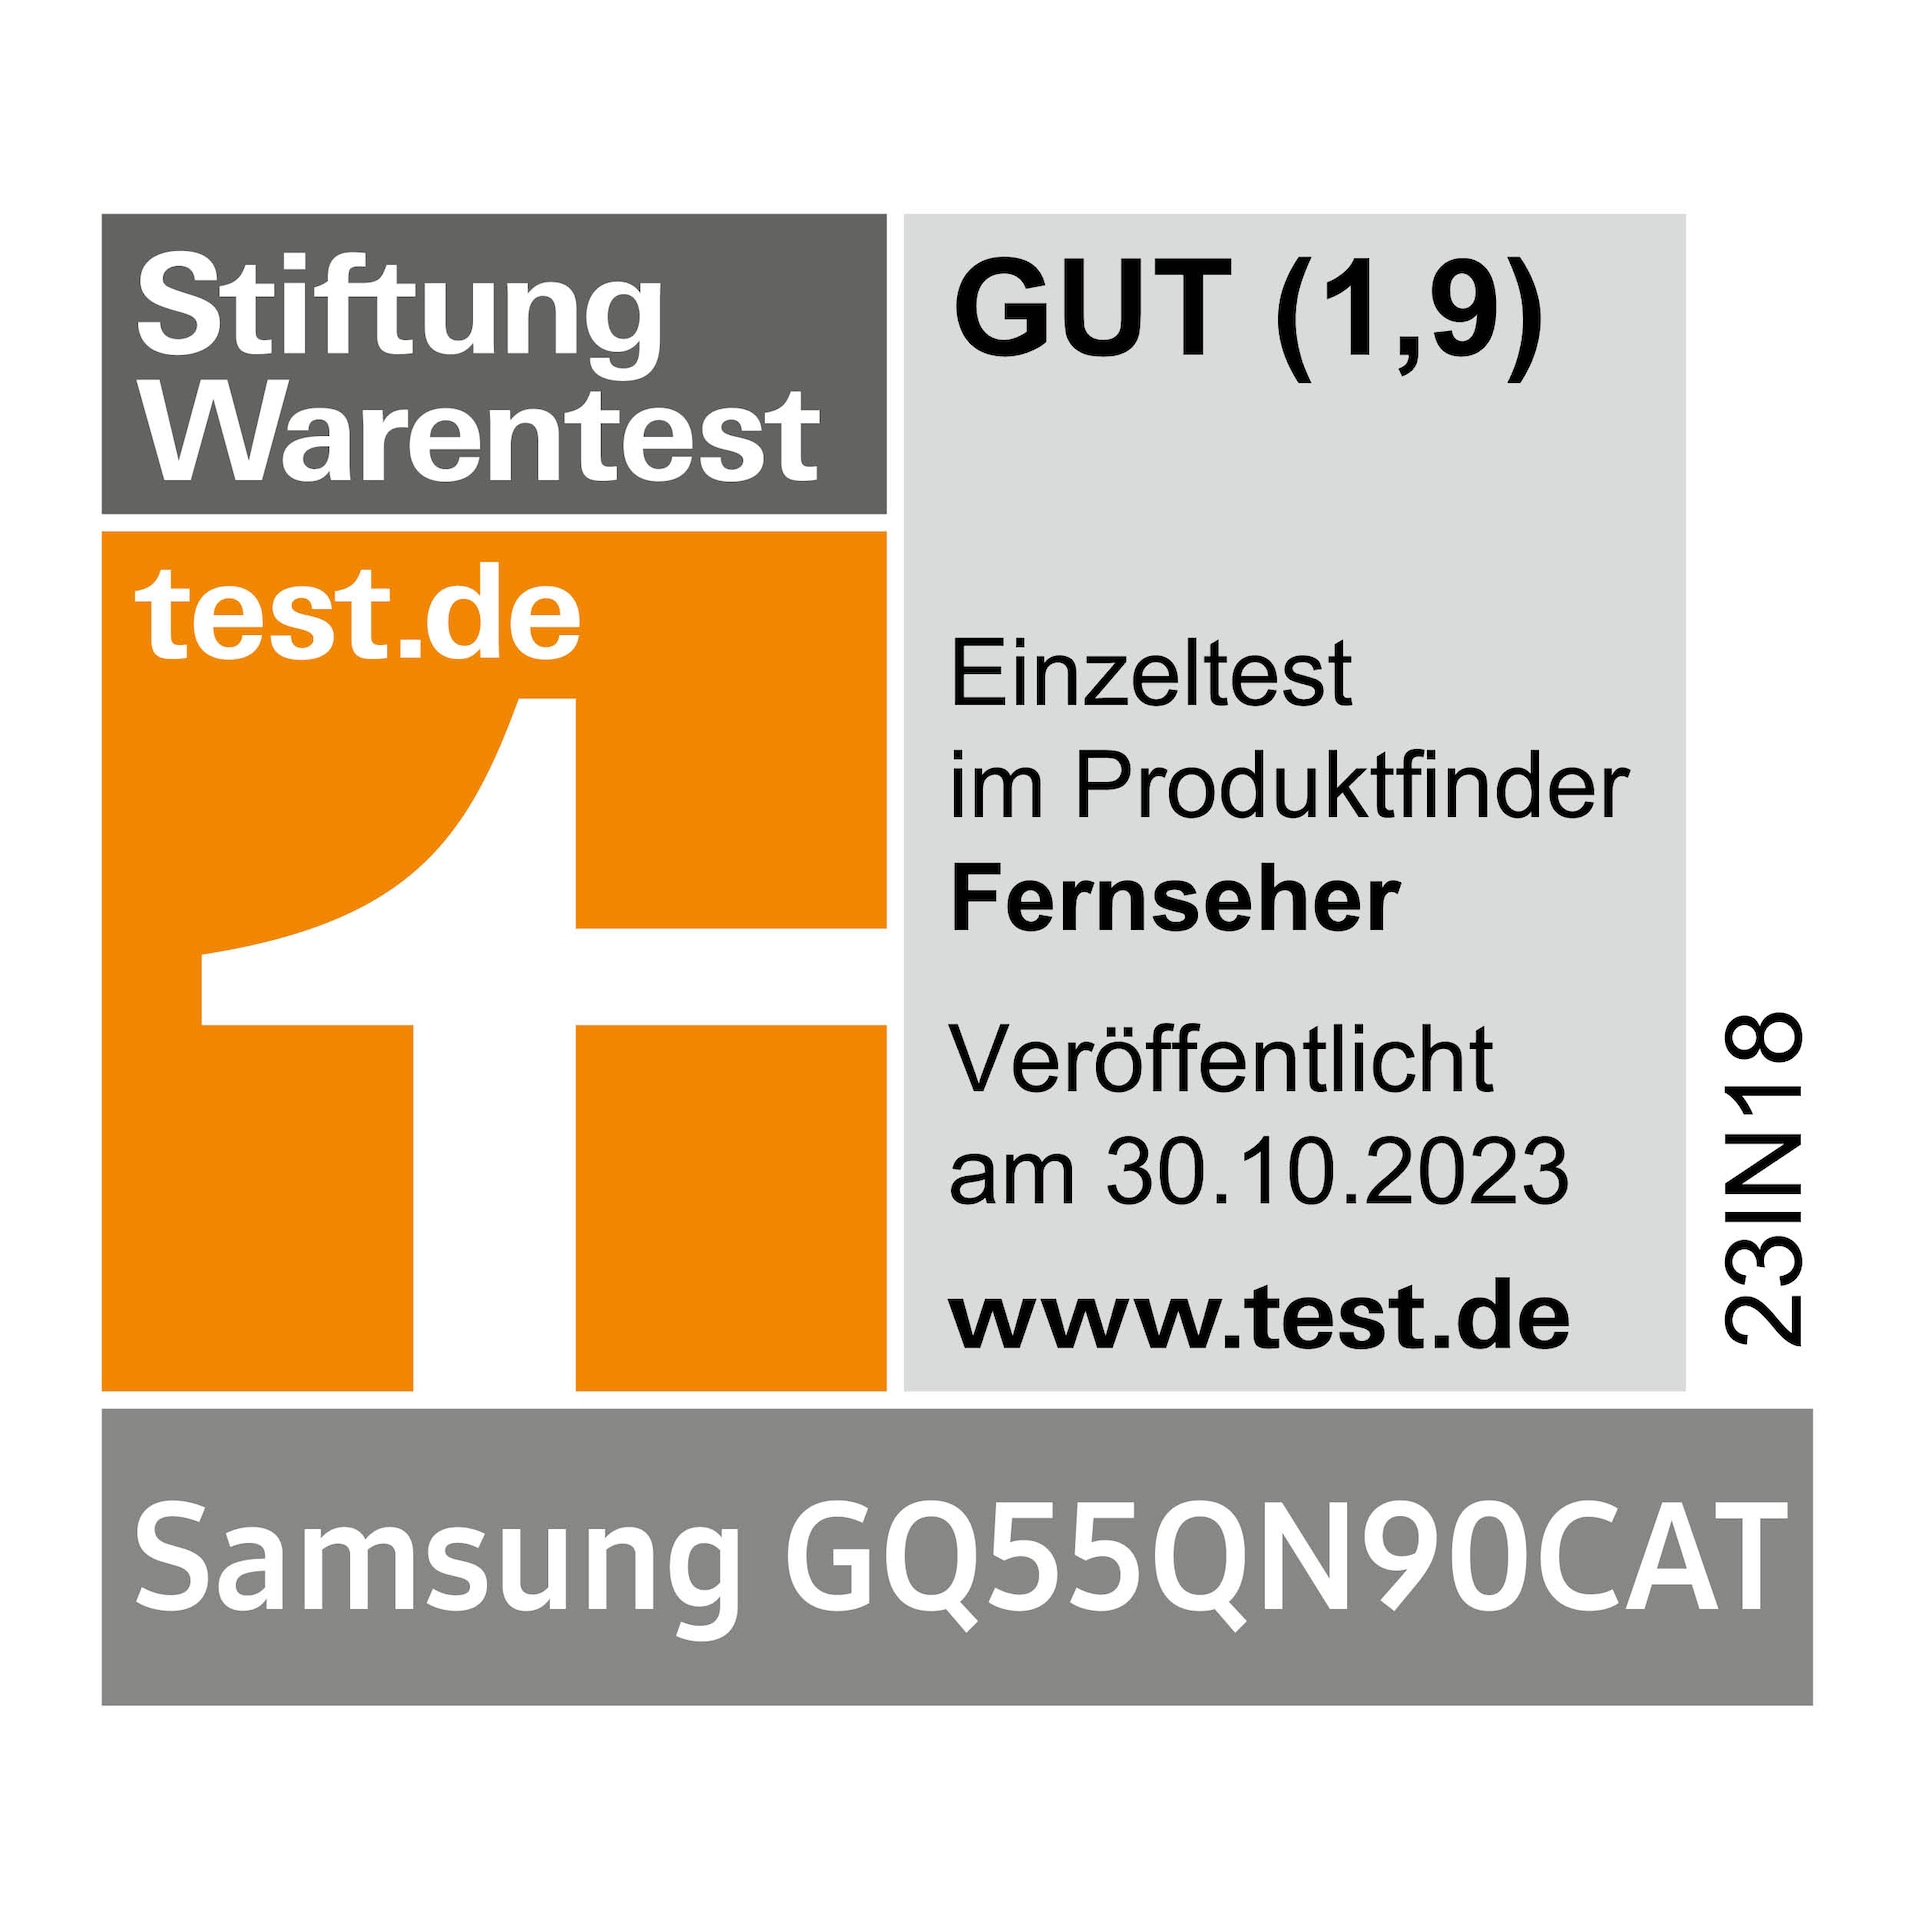 Stiftung Warentest, gut (1,9), test.de, veröffentlicht am 30.10.2023, zum Samsung GQ55QN90CAT, Einzeltest.